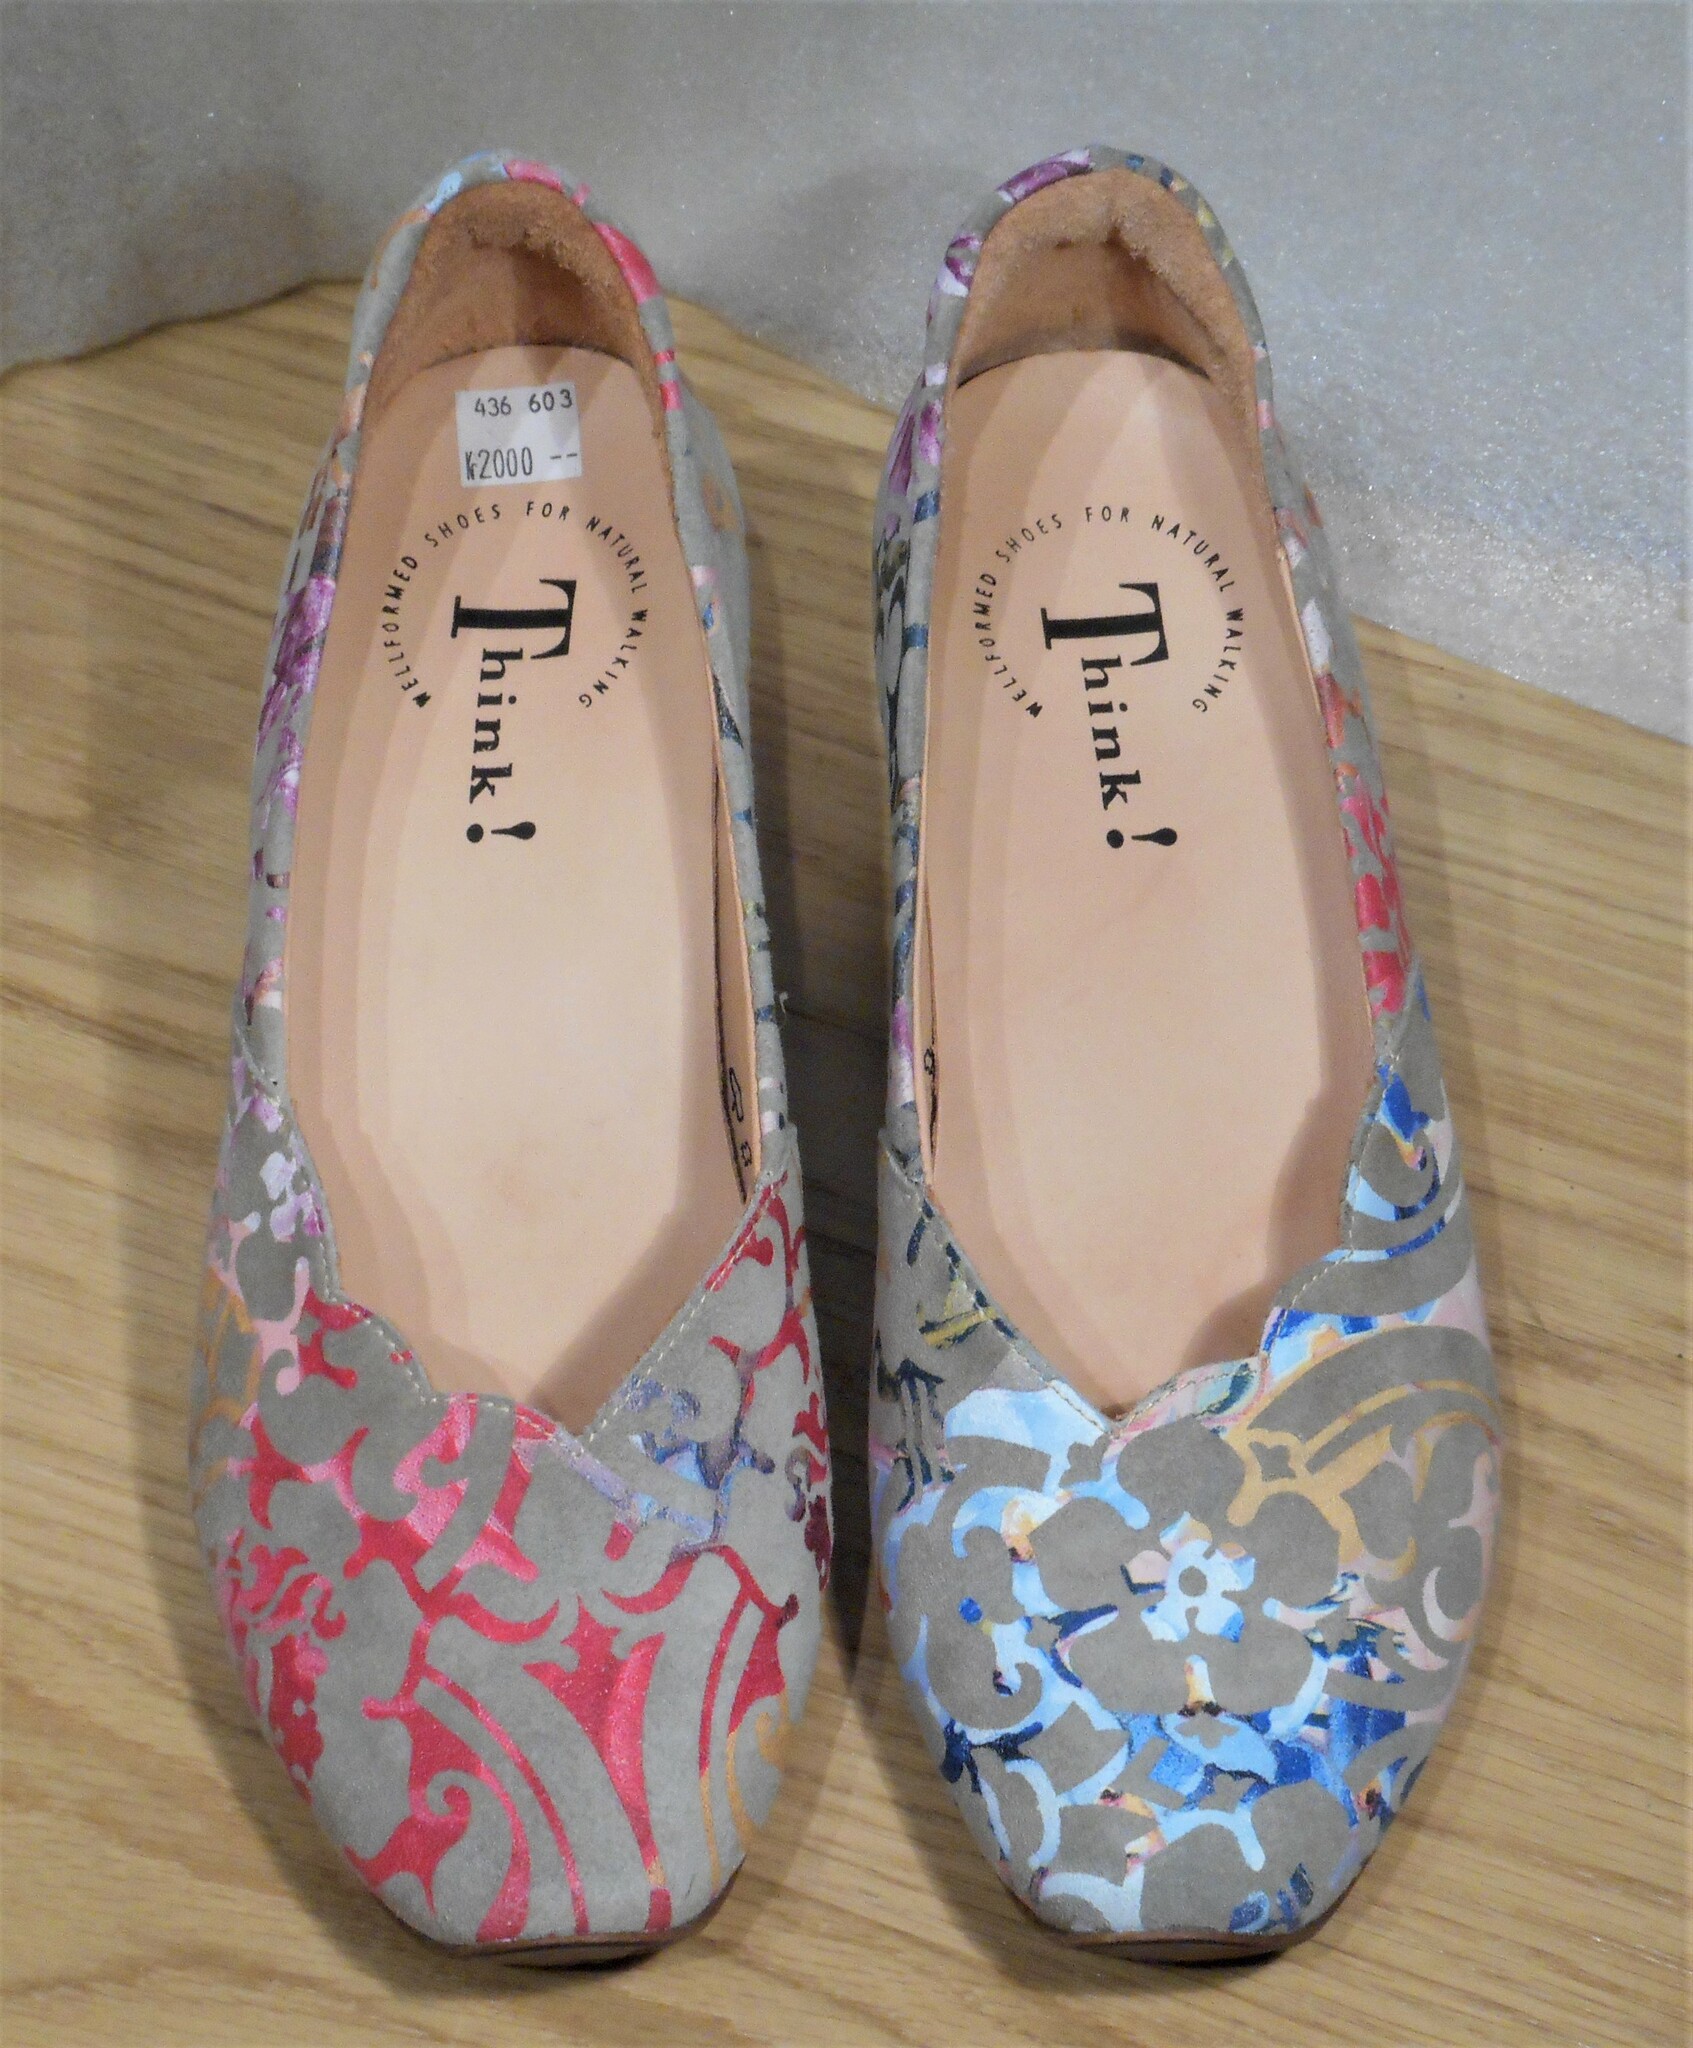 Grå sko med multifärgat mönster - fabrikat Think!